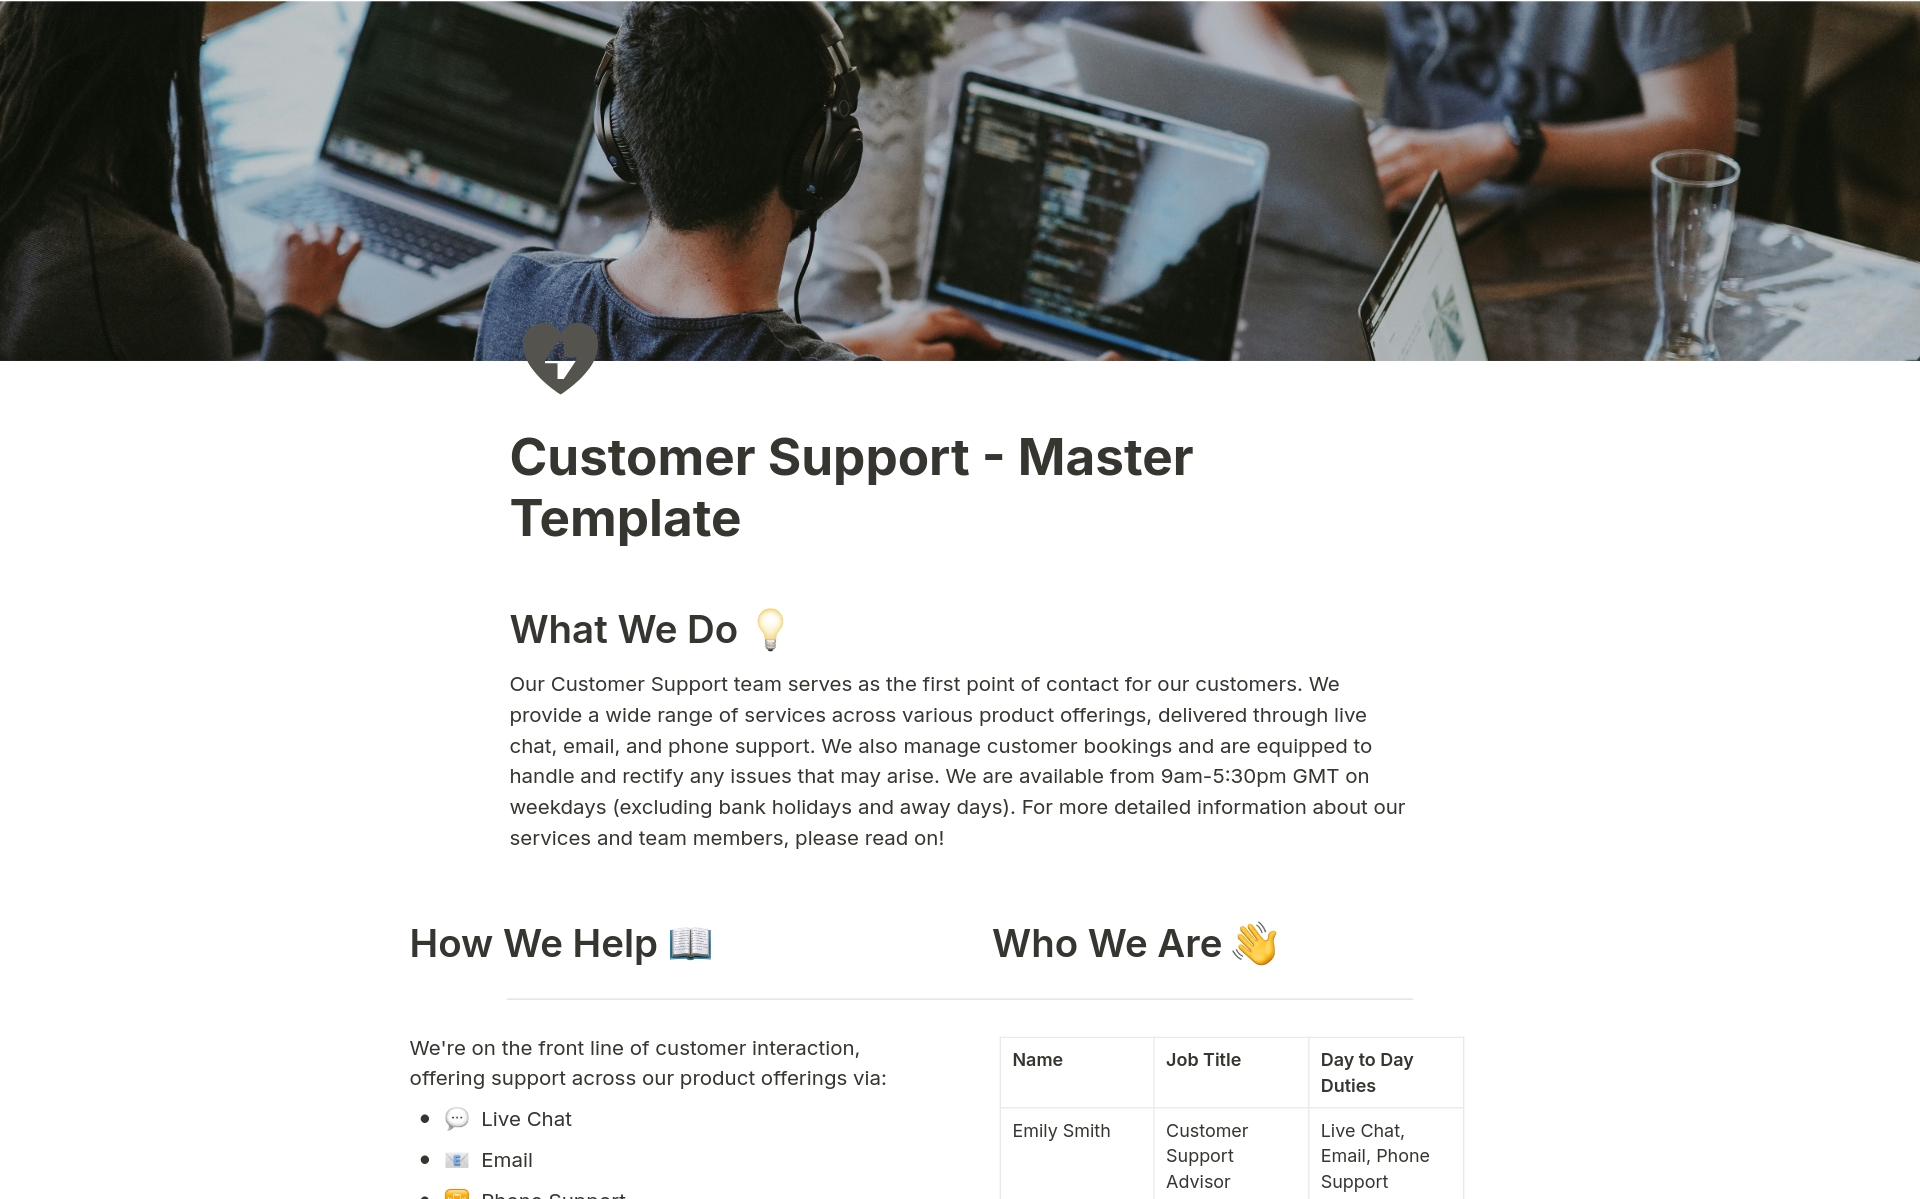 Vista previa de plantilla para Customer Support Management